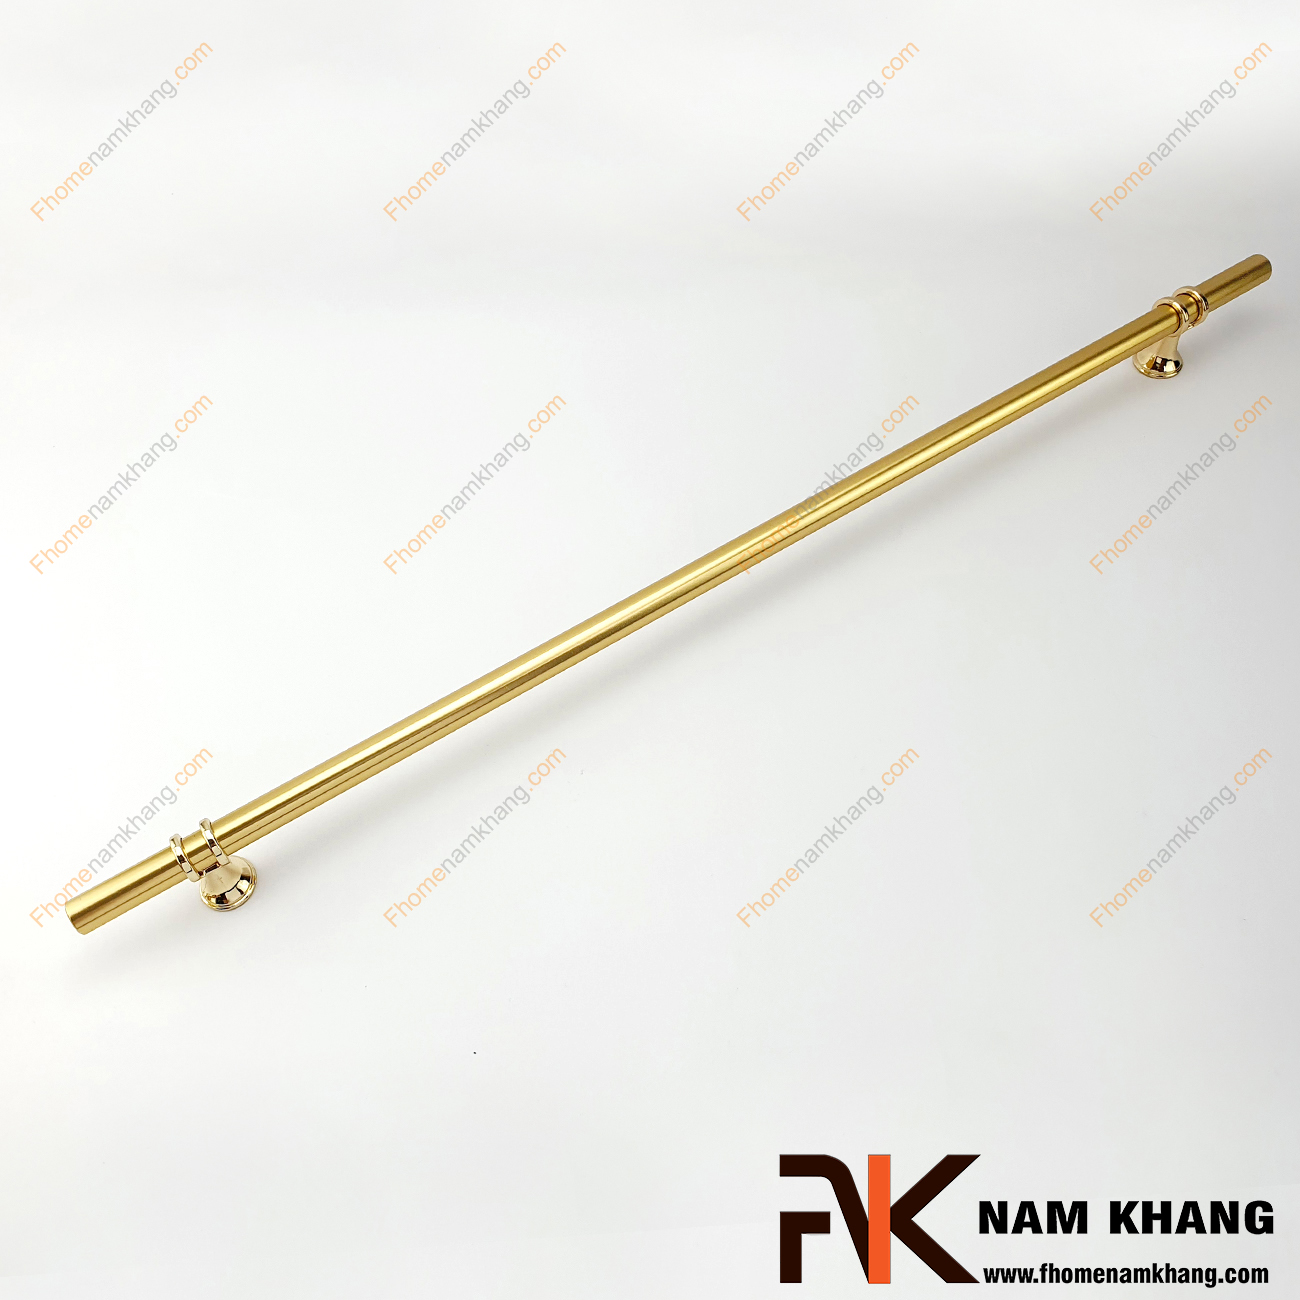 Tay nắm tủ cổ điển loại dài màu vàng NK207-V có thiết kế khá đặc biệt và thu hút khi kết hợp chân đến tròn mạ vàng bóng phối hợp với phần thân là một ống tròn từ chất liệu hợp kim bền chắc.